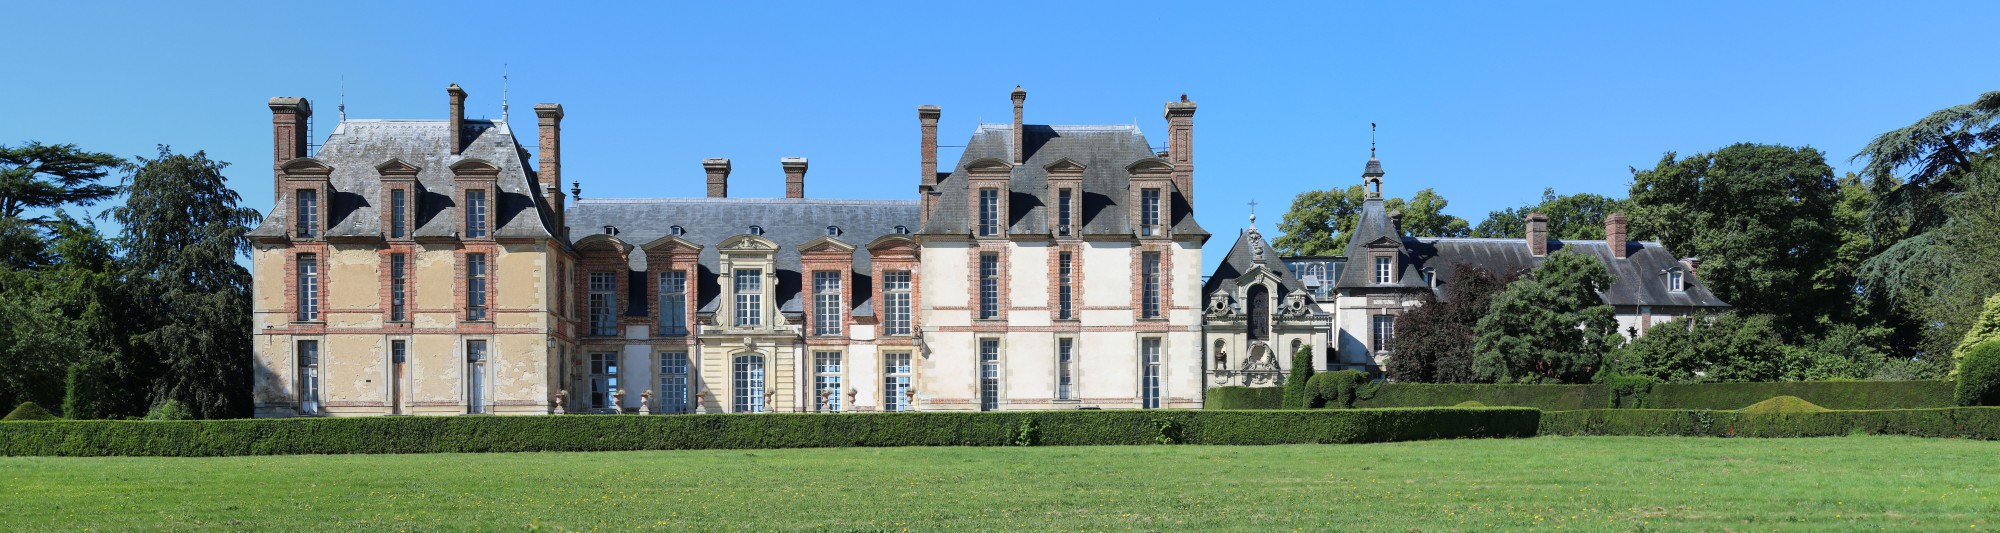 Chateau de Thoiry